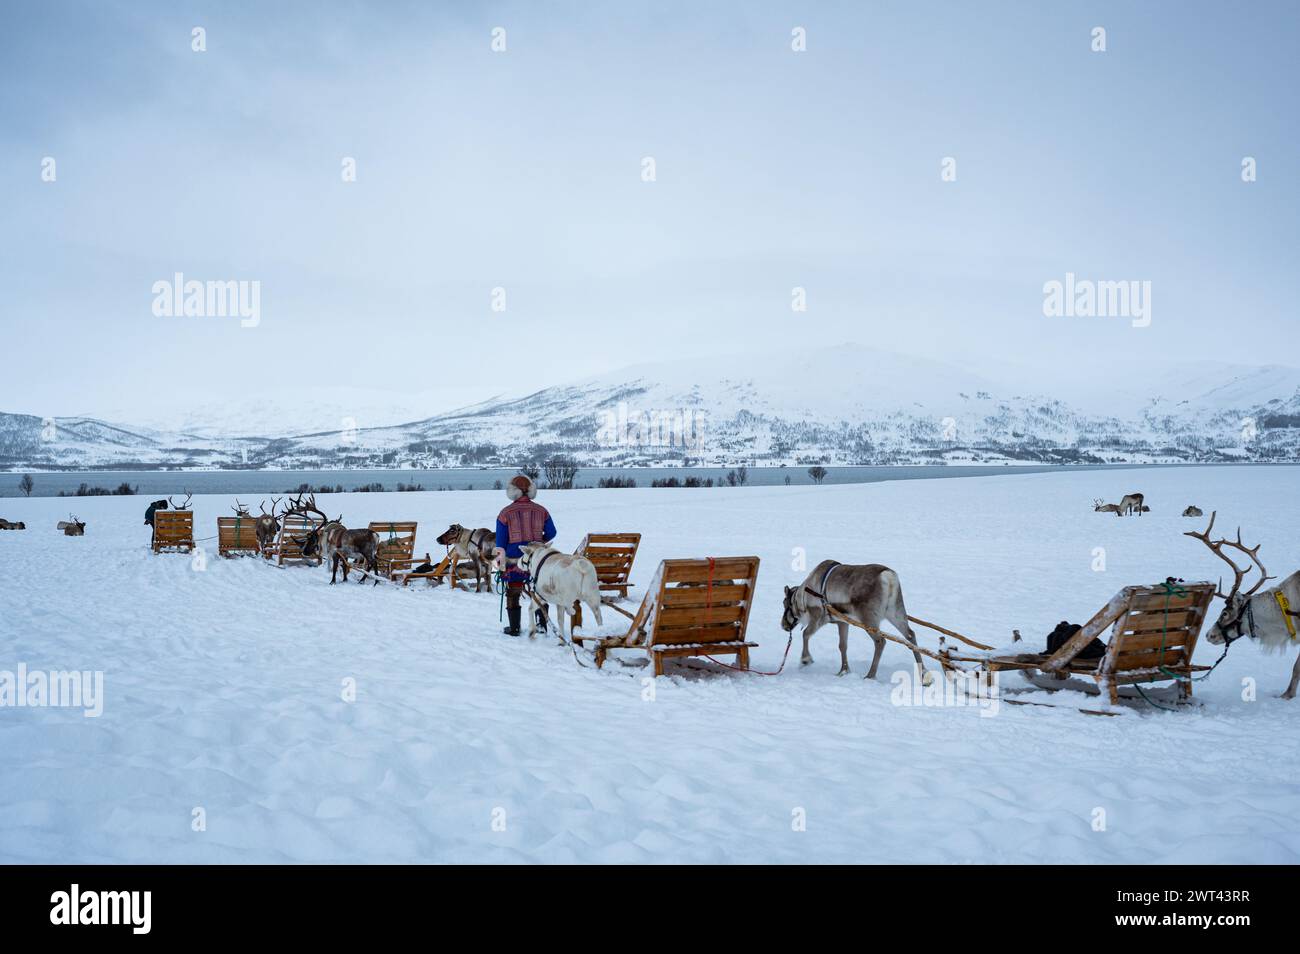 Rentiere ziehen Schlitten und werden von Saami in traditioneller Kleidung in einer verschneiten Landschaft in der Nähe von Tromsø, Norwegen, begleitet. Stockfoto